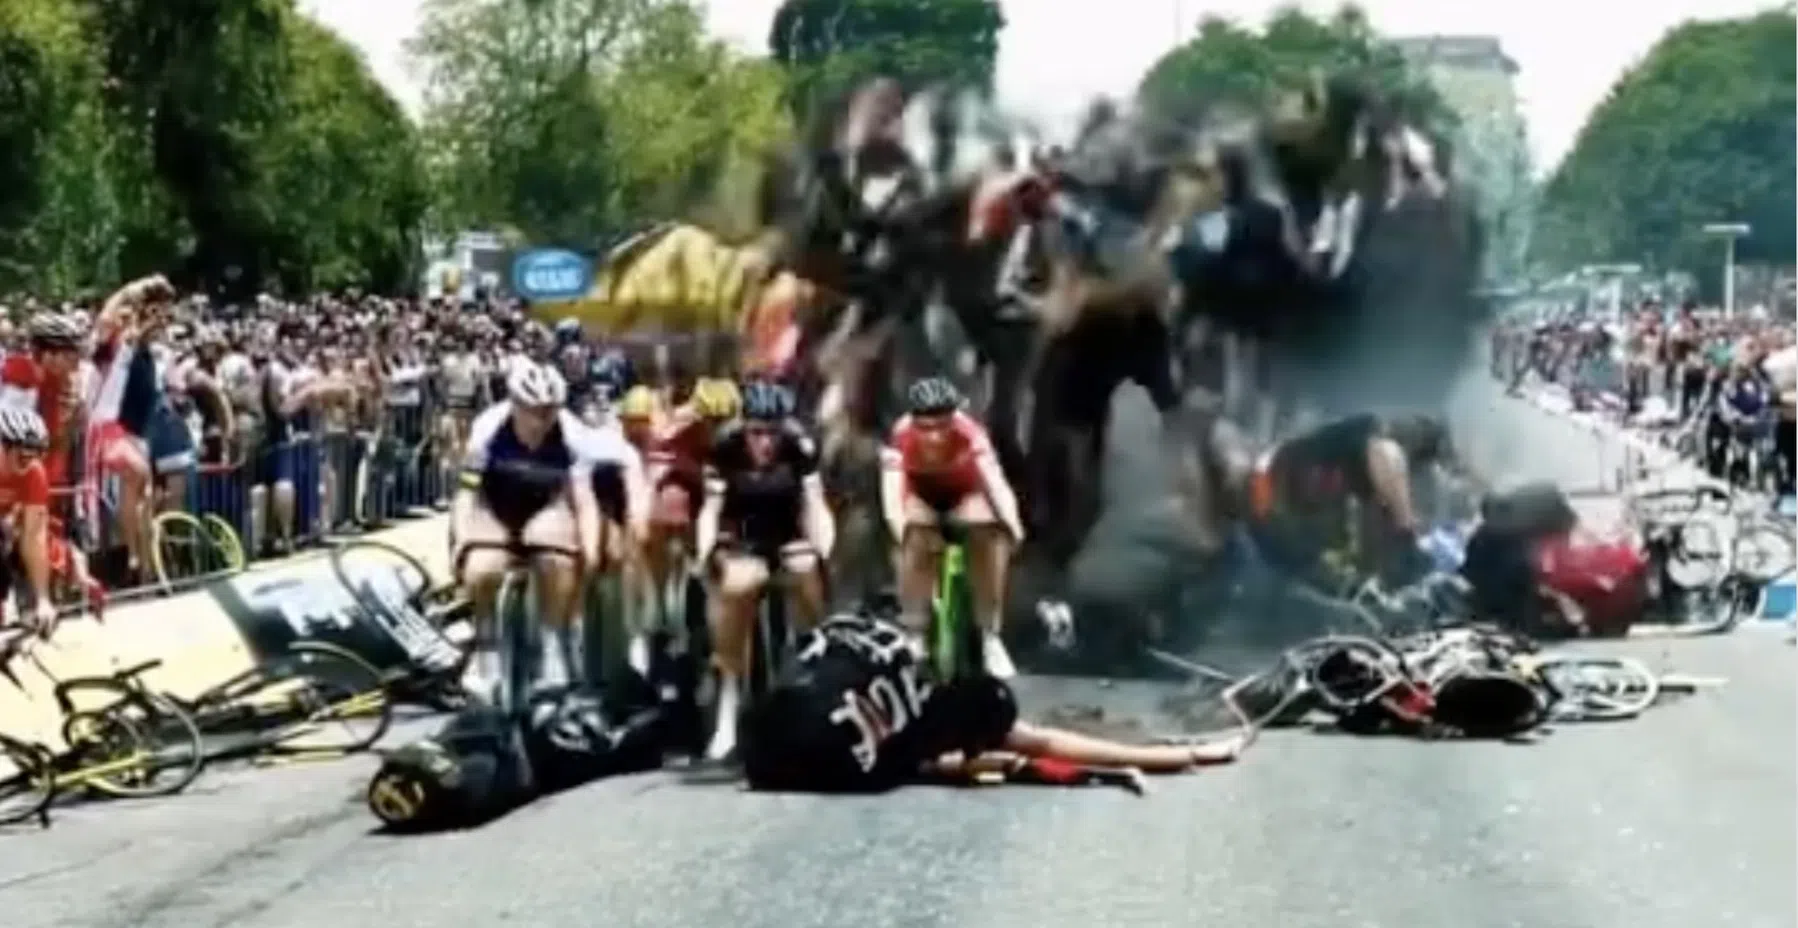 Hilarische AI-beelden van de Tour de France lijken een koortsdroom